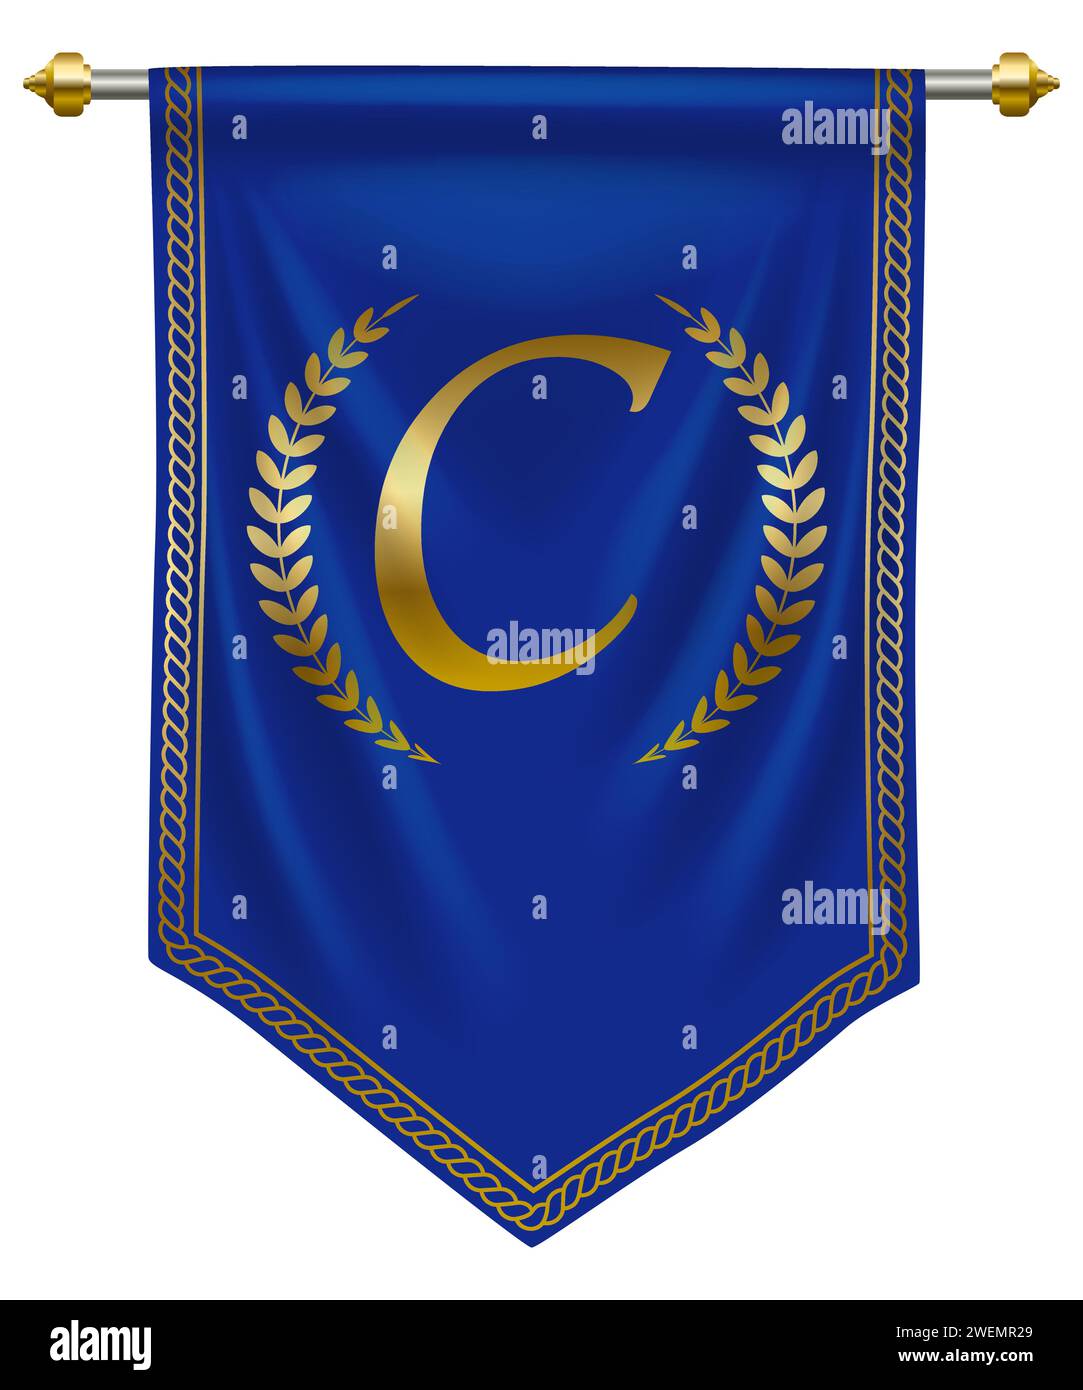 Elegante lettera C dorata su pennant Royal Blue per un'identità o un'etichetta di marca di alta qualità. Illustrazione vettoriale Illustrazione Vettoriale